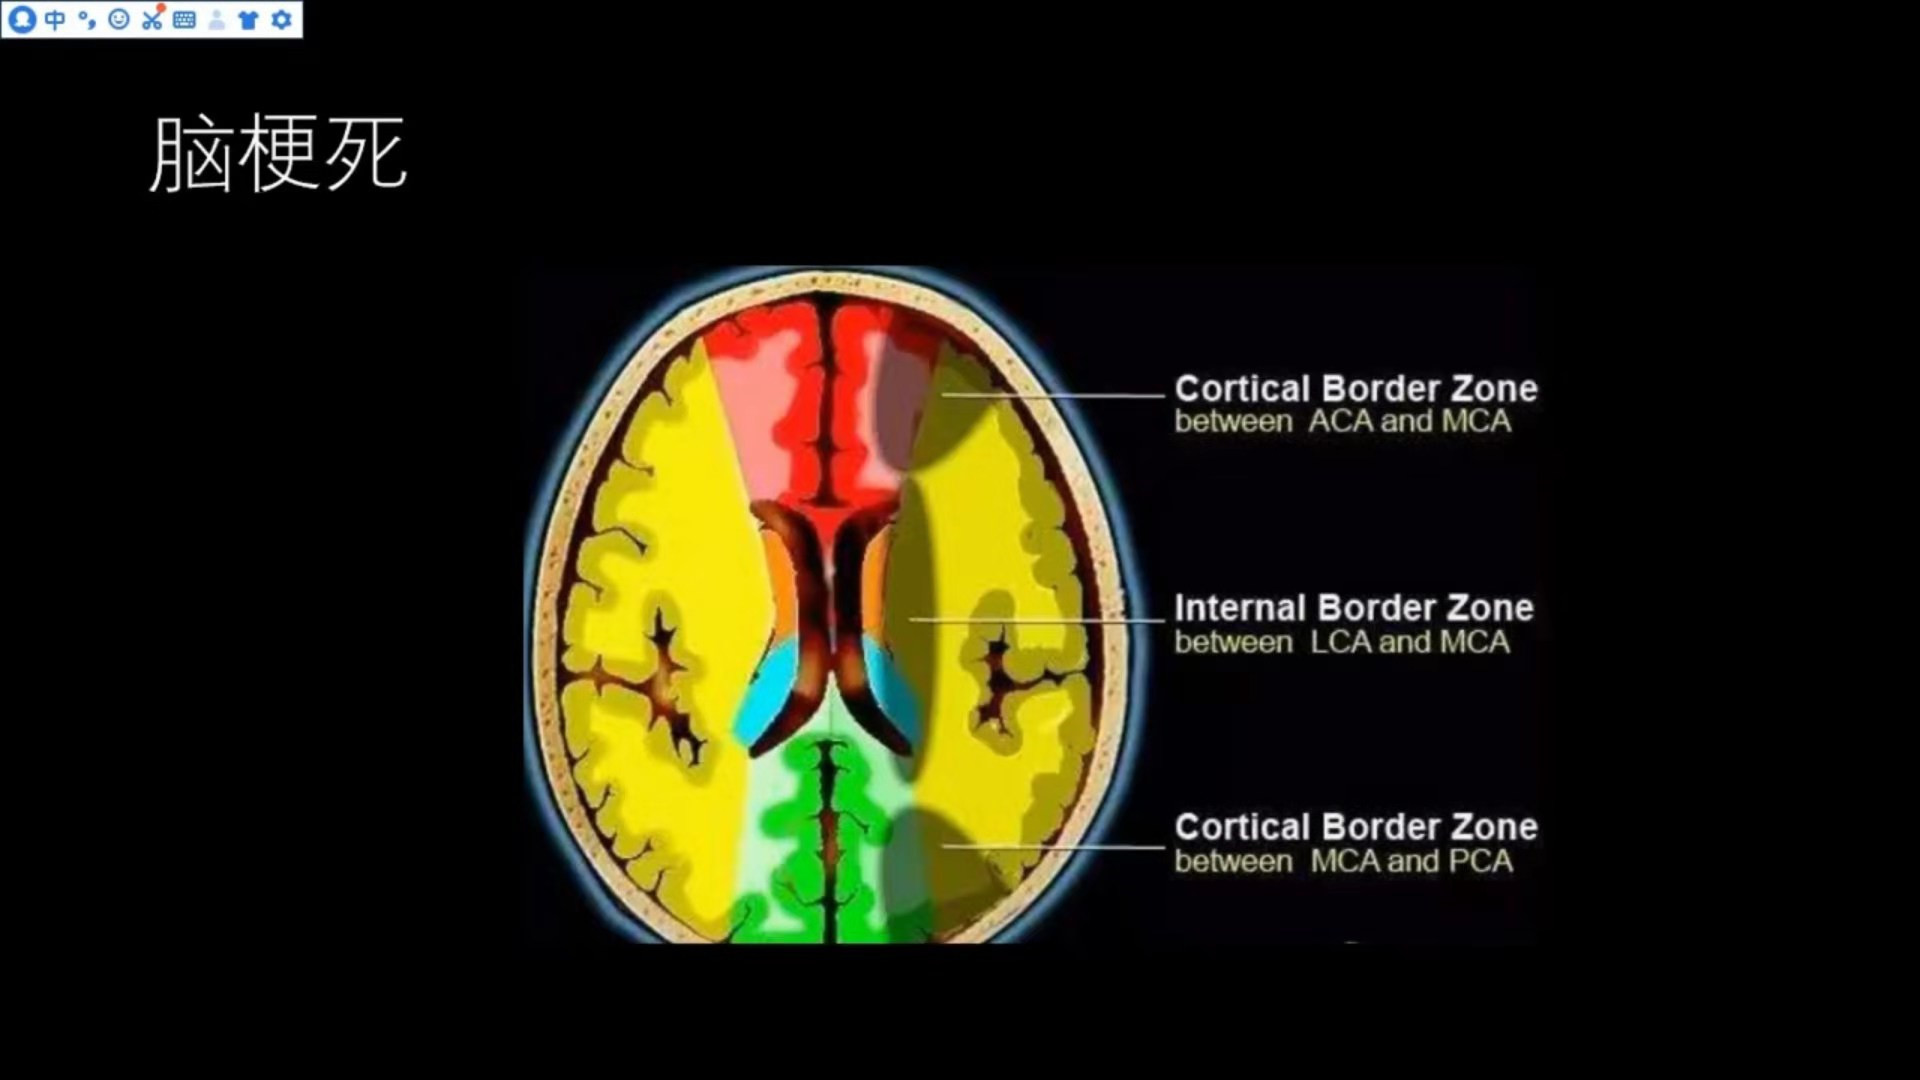 常见<font color="red">脑血管</font><font color="red">疾病</font>的MRI表现